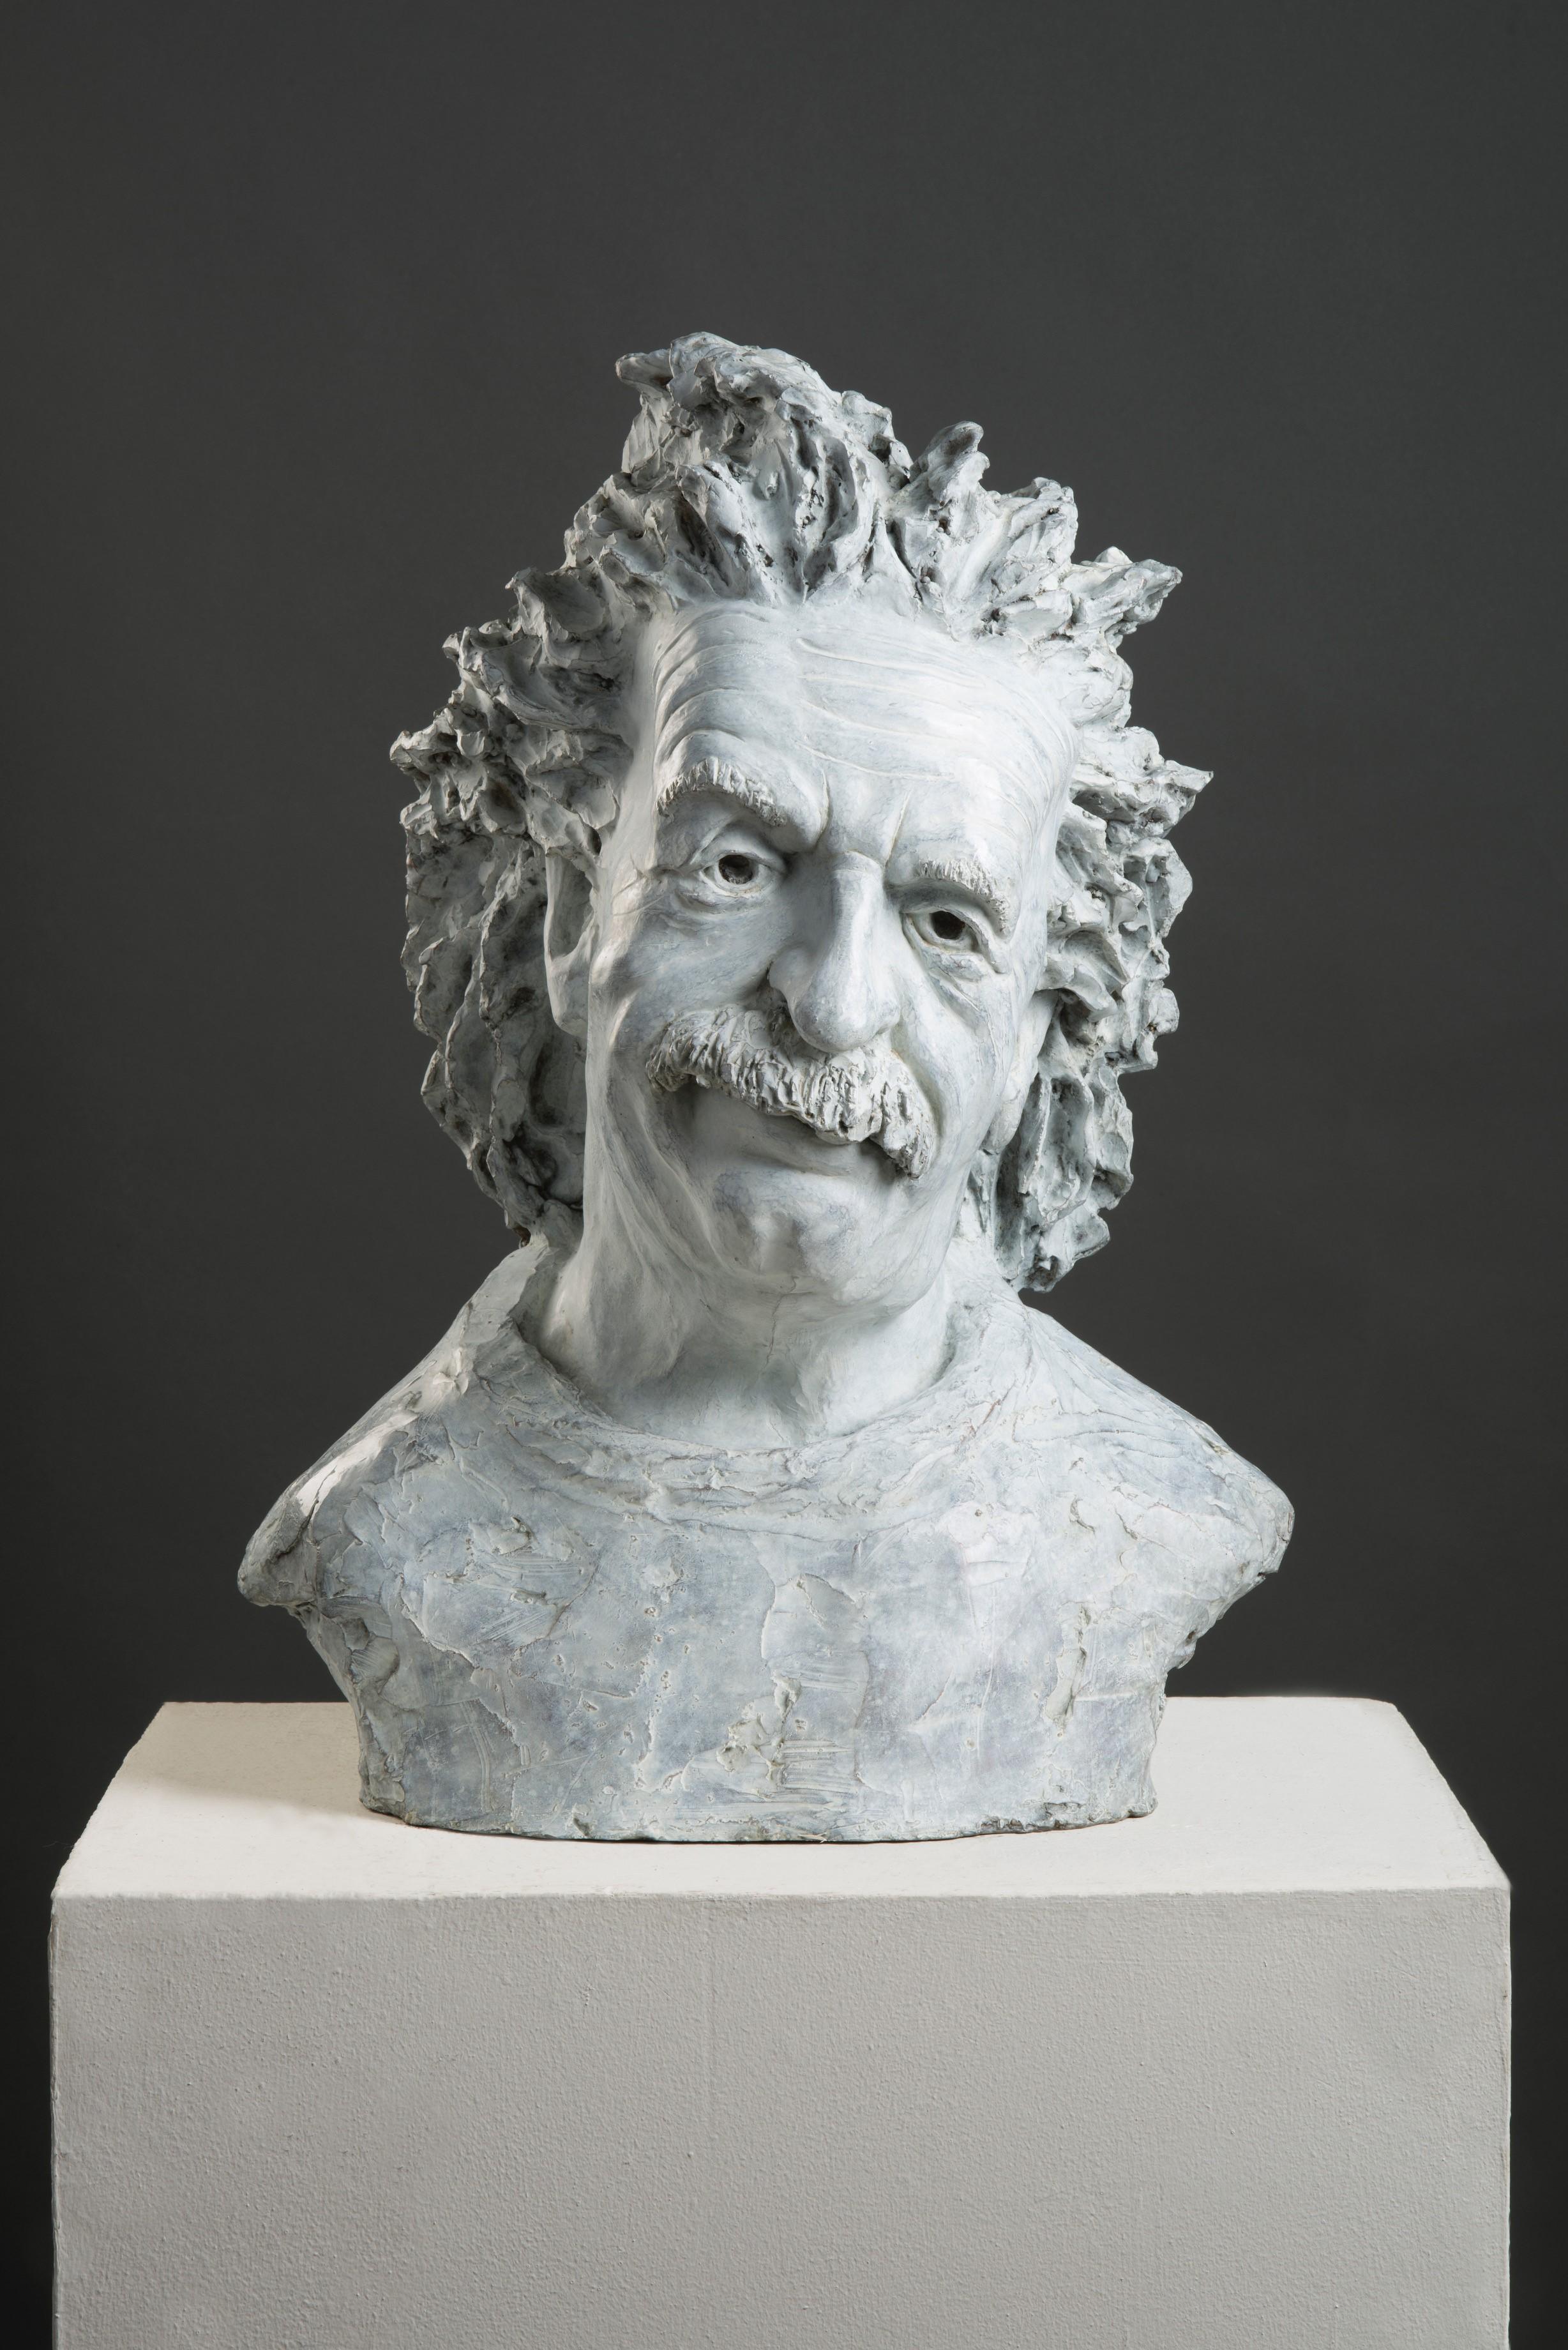 Giuseppe Palumbo Figurative Sculpture - Einstein 3/15